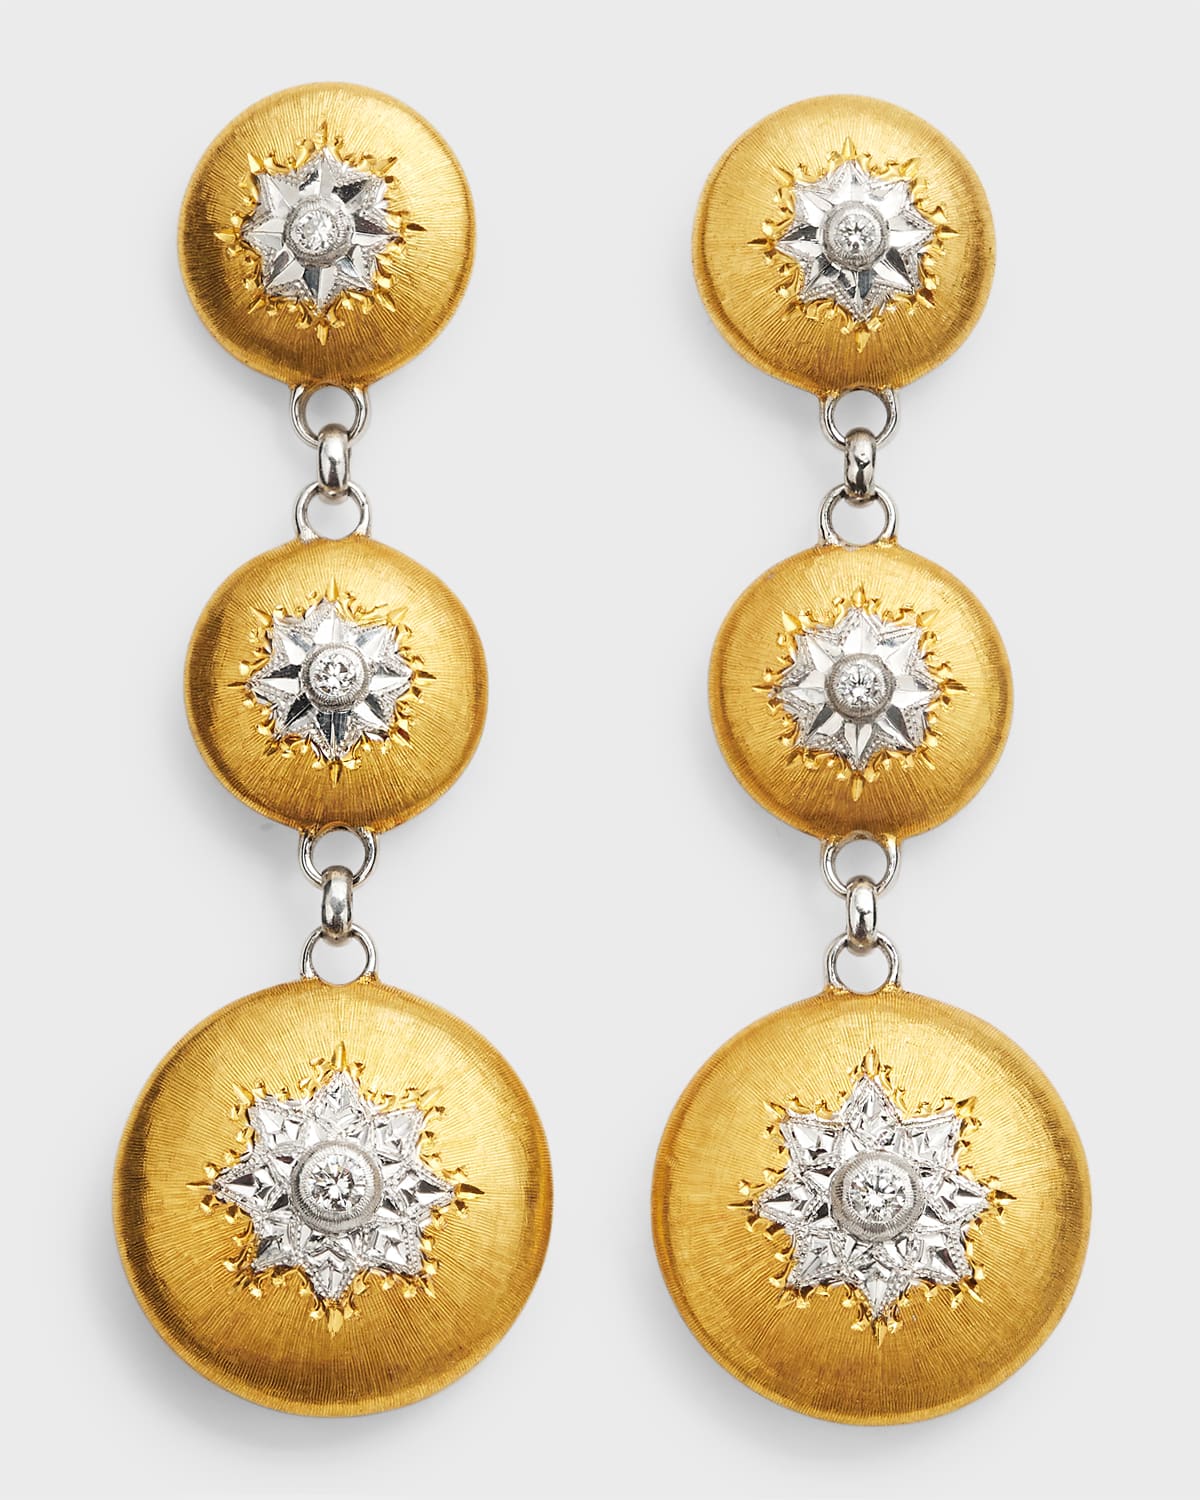 Buccellati Macri Classica 3-drop Dangle Earrings In 18k Yellow & White Gold